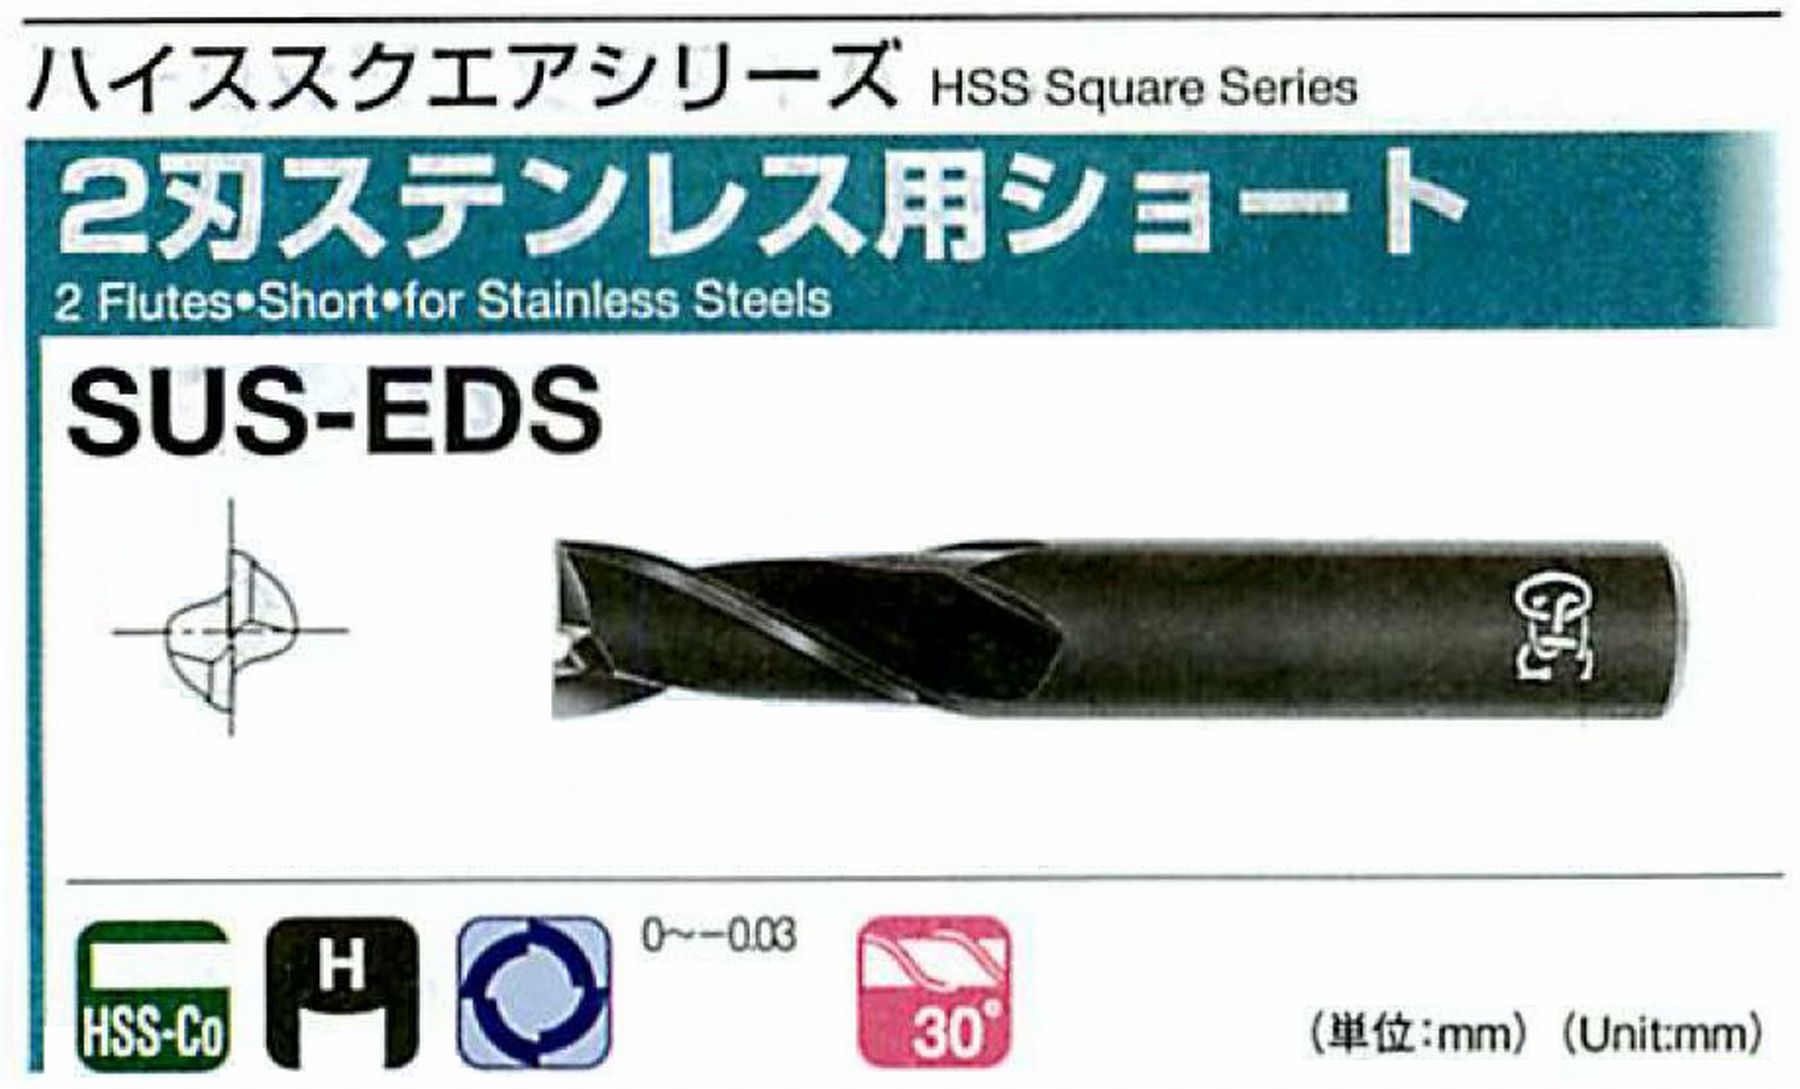 オーエスジー/OSG 2刃ステンレス用ショート SUS-EDS 外径6.5 全長60 刃長14 シャンク径10mm